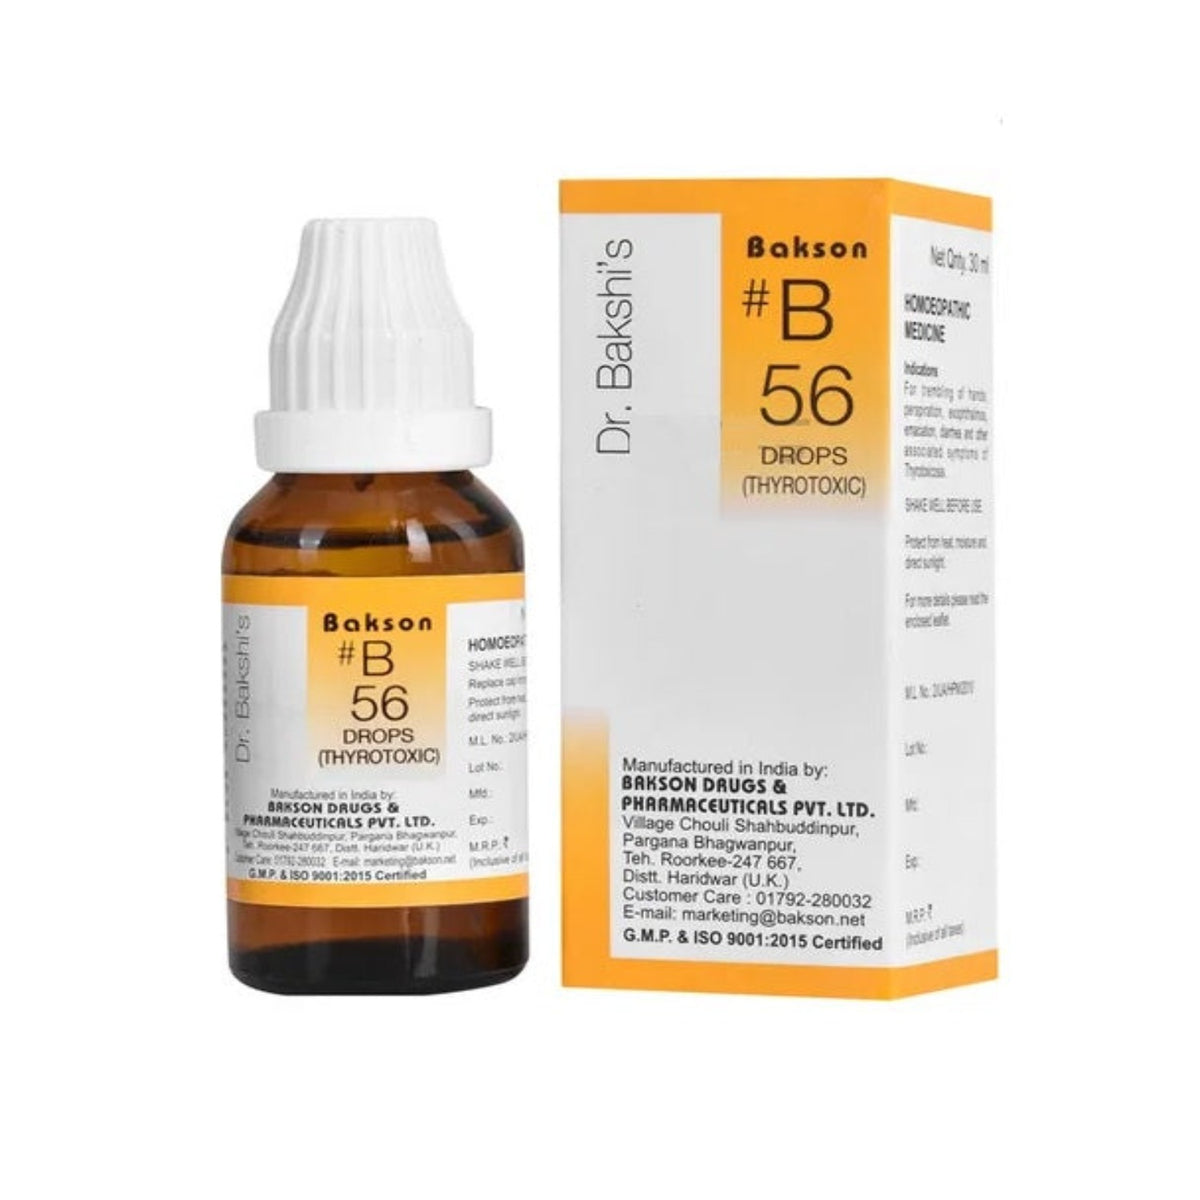 Bakson's B56 (B-56) Thyreotoxic für Schilddrüsenfunktionsstörungen Tropfen 30ml